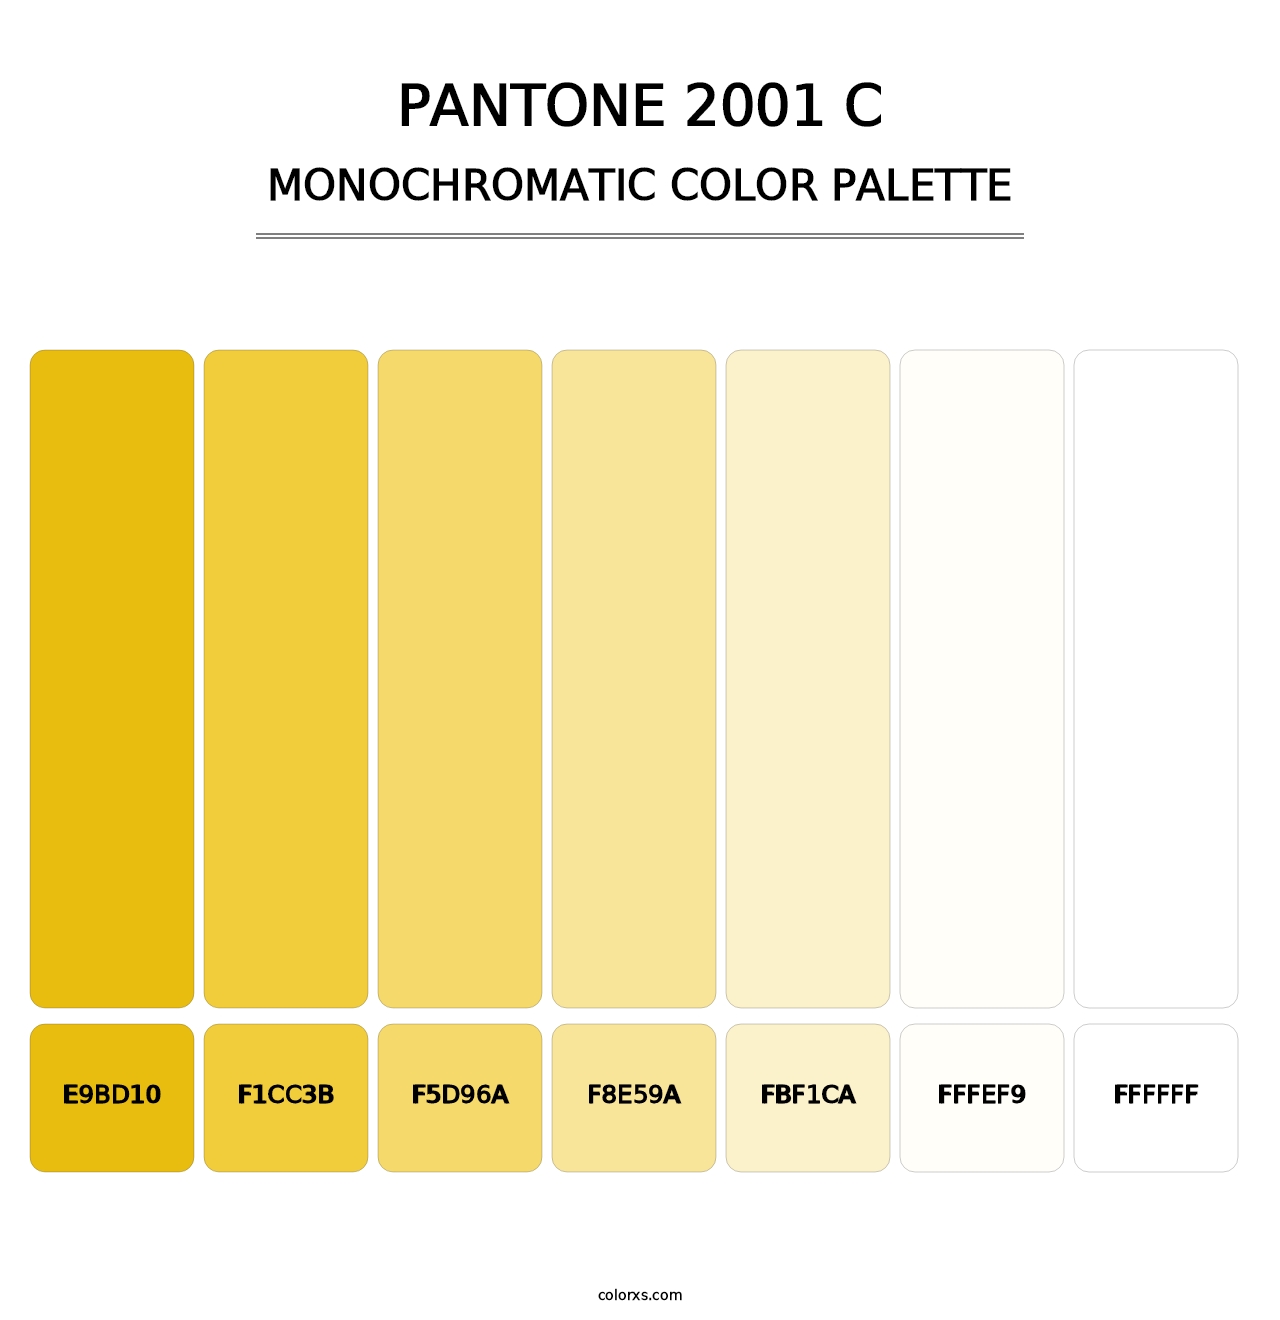 PANTONE 2001 C - Monochromatic Color Palette